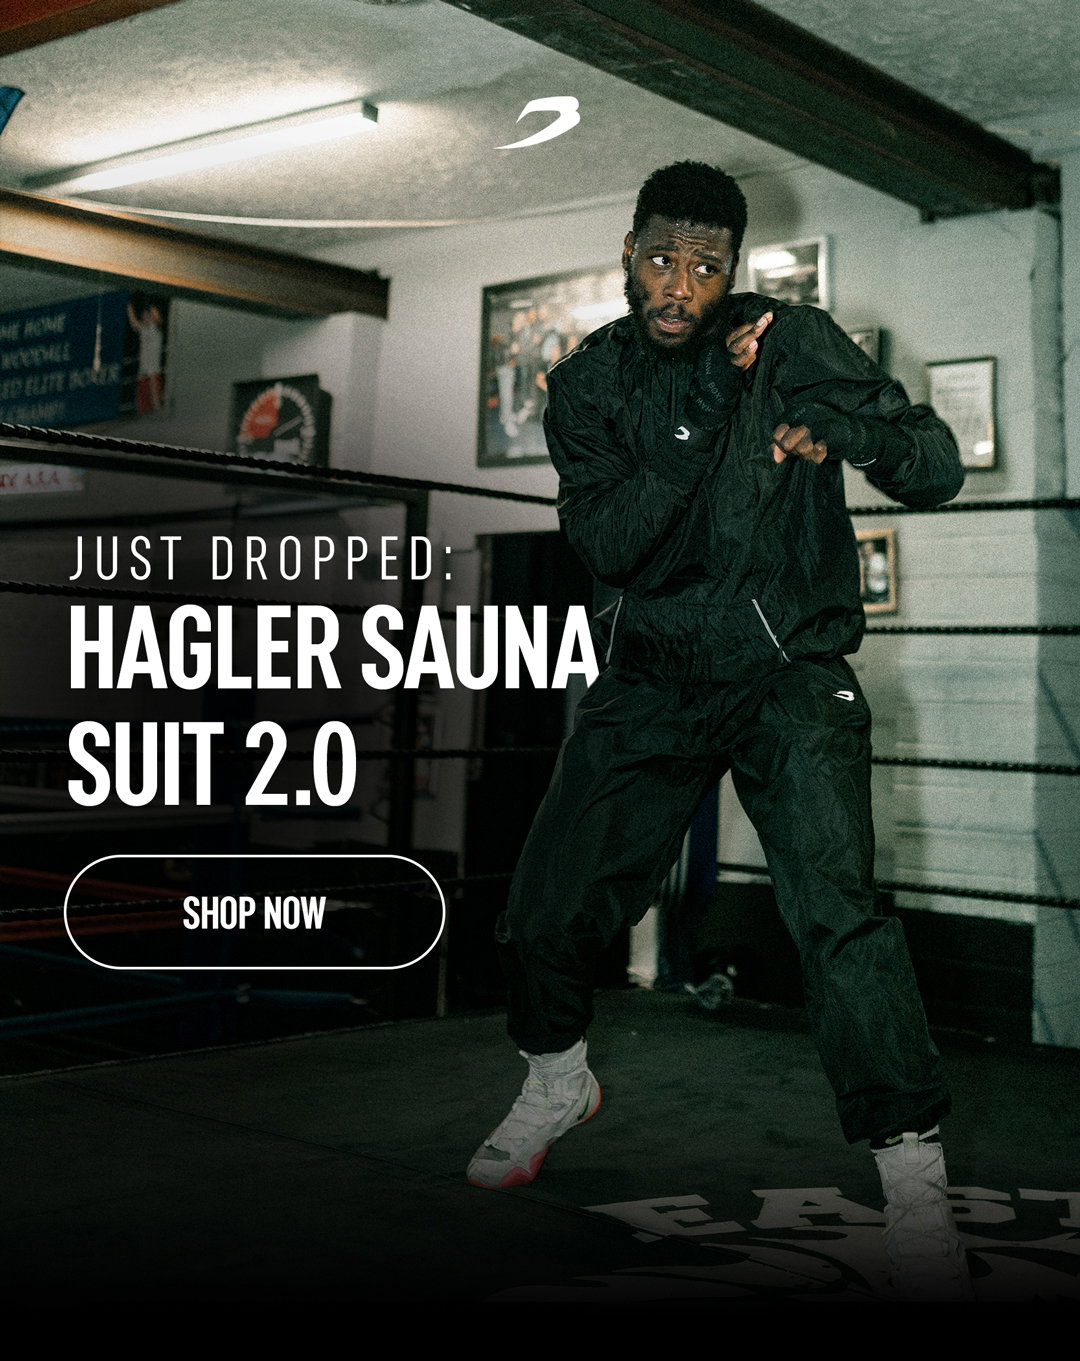 Women's Hagler Sauna Suit 2.0 - Black, Essential Weight Loss Tool